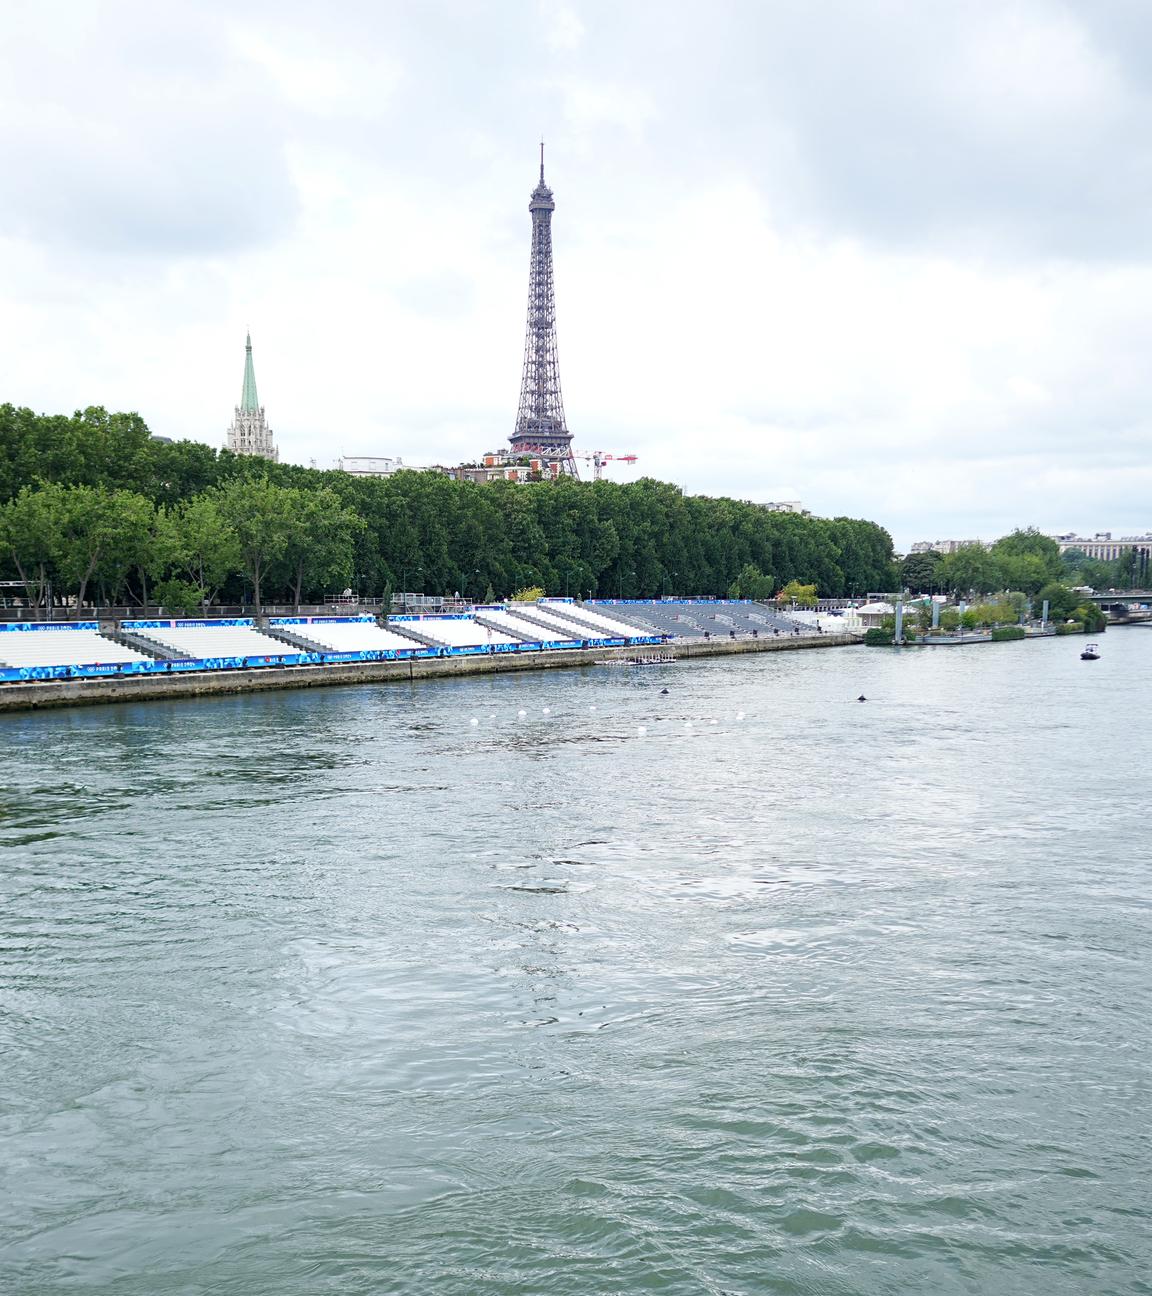 Olympia Paris 2024, Blick auf die Tribünen an der Seine. Hier sollen die Freiwasserwettbewerbe stattfinden. Im Hintergrund ist der Eiffelturm zu sehen.